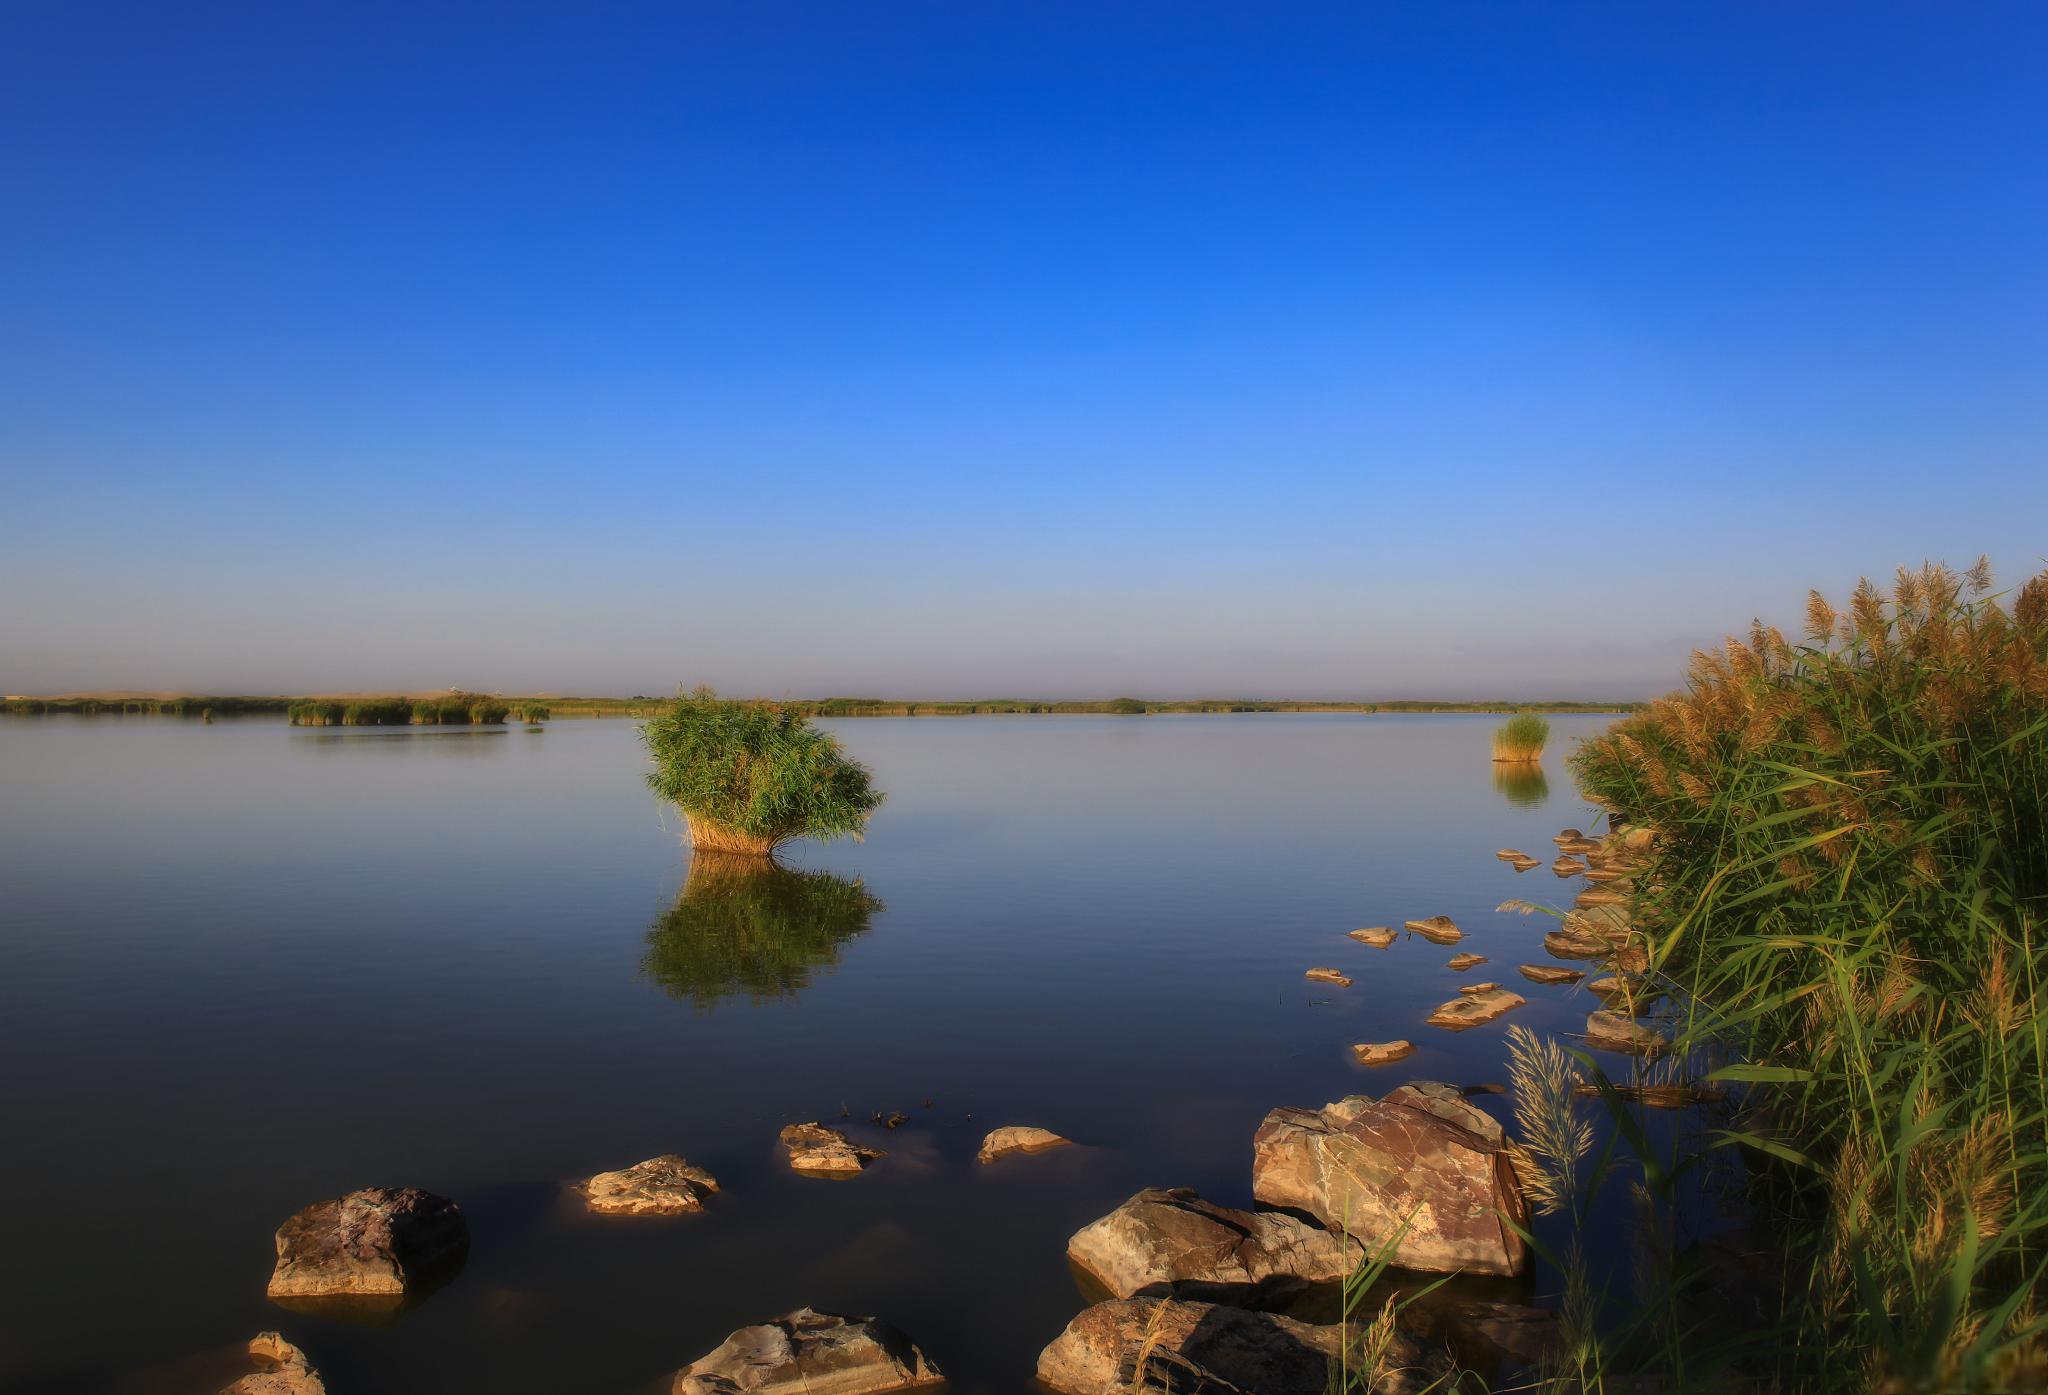 石嘴山市沙湖旅游景区位于中国宁夏回族自治区石嘴山市,是国内旅游必